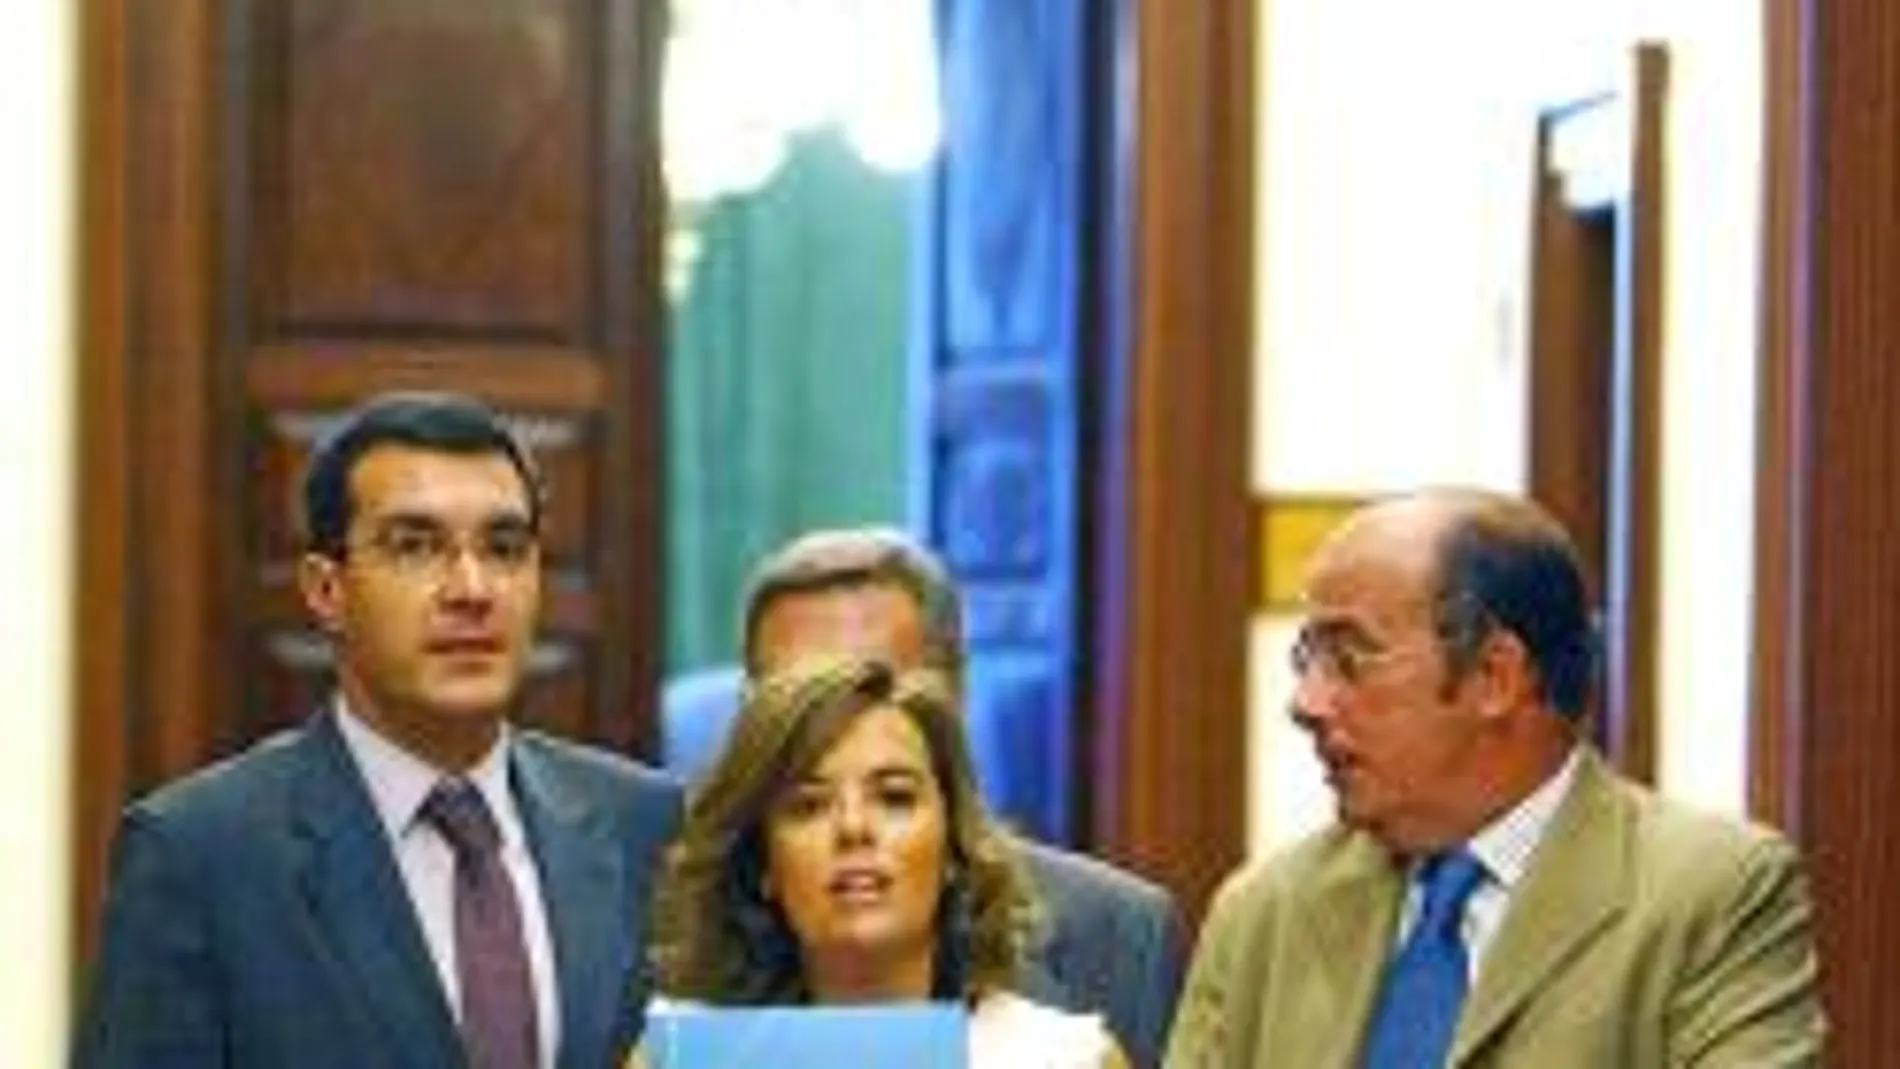 La portavoz del PP en el Congreso, Soraya Sáenz de Santamaría, denunció ayer la falta de interés en la renovación de los órganos constitucionales